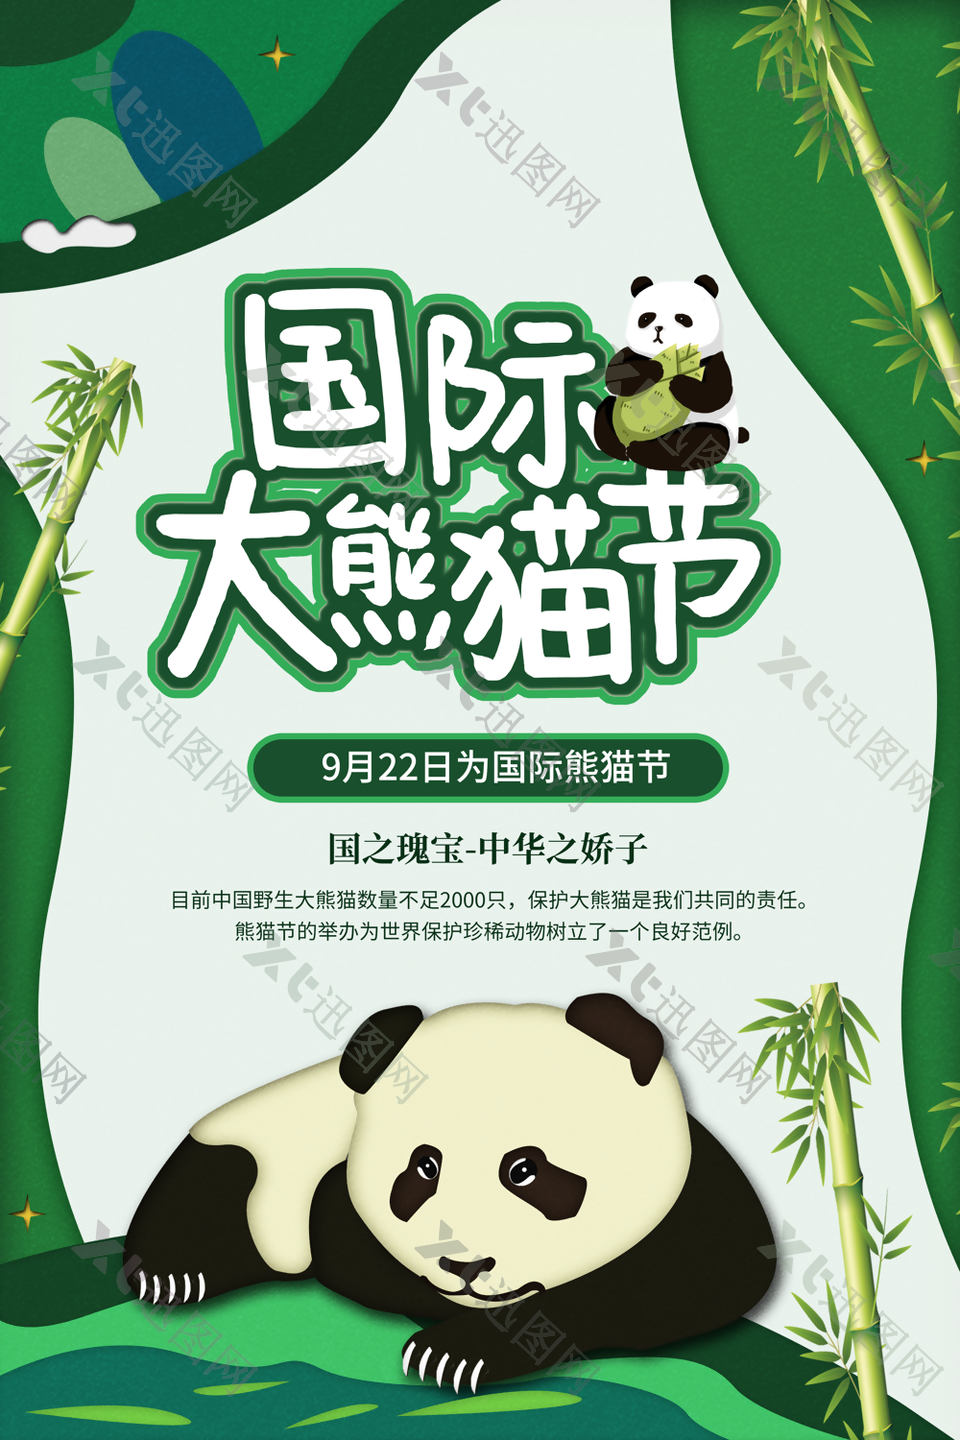 国际大熊猫节绿色可爱插画海报设计